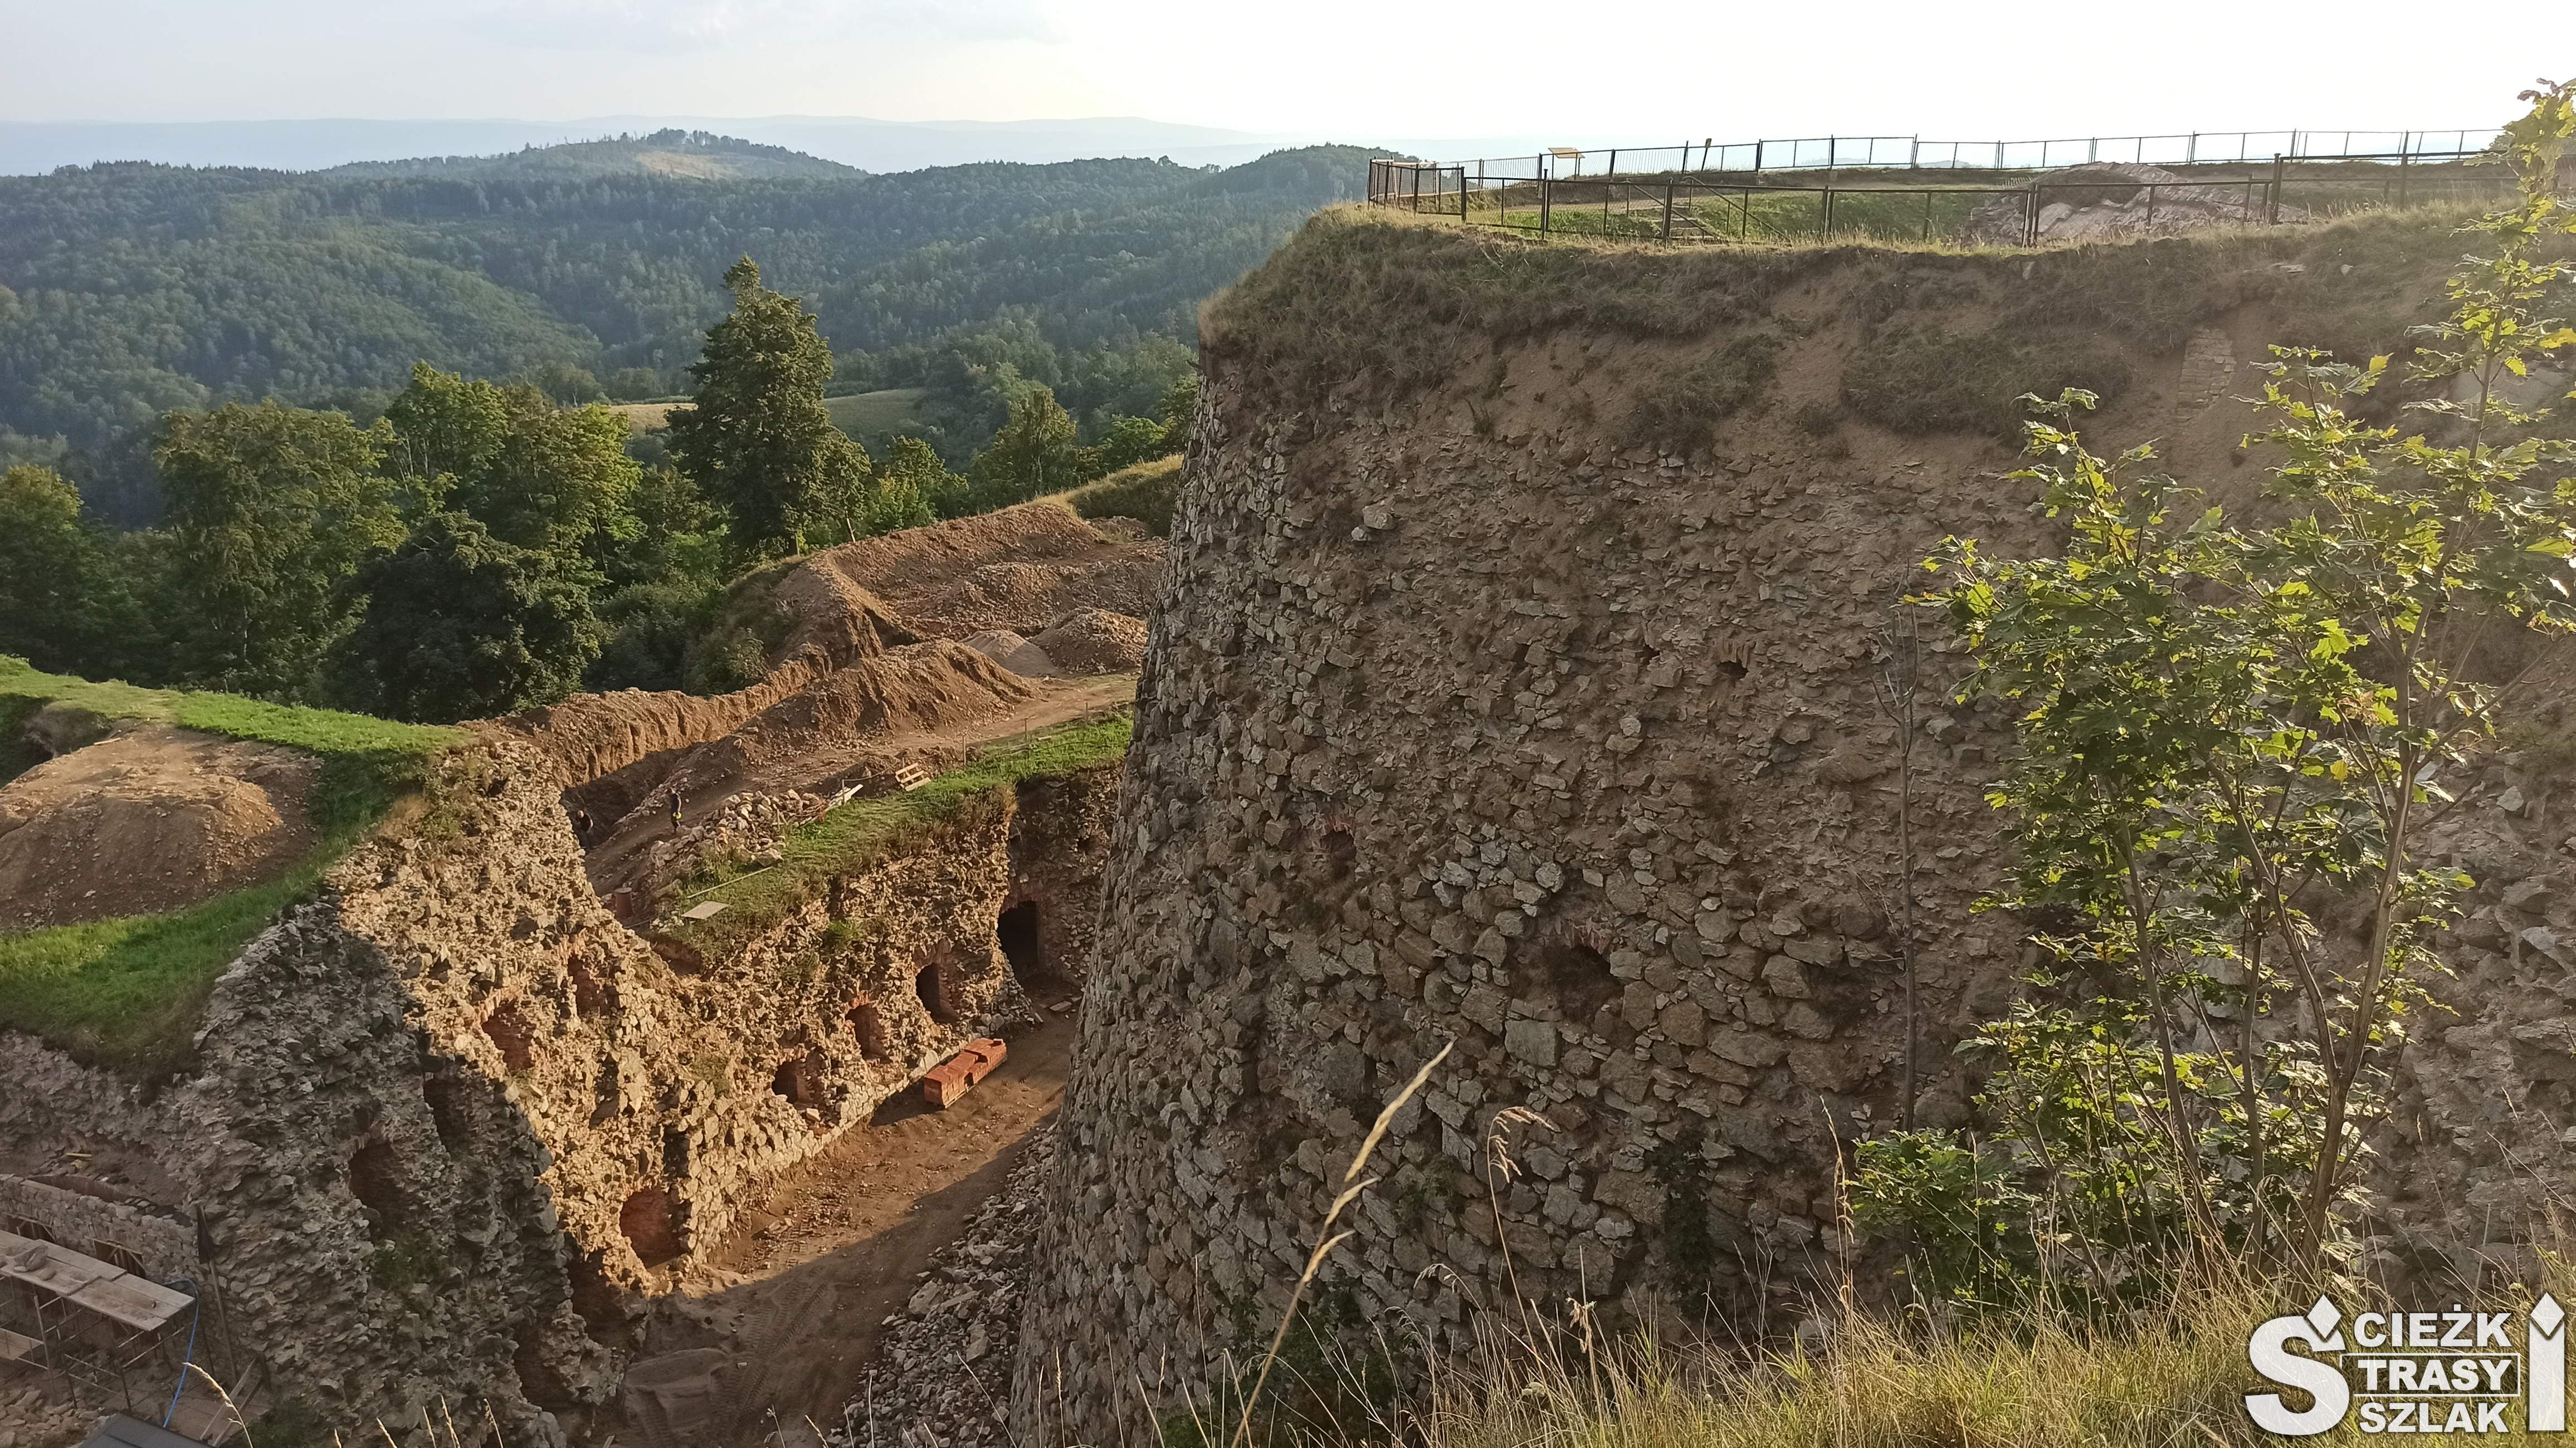 Wysokie skarpy i kamienne mury tworzące bastiony i fortyfikacje Twierdzy Srebrna Góra ponad koronami drzew